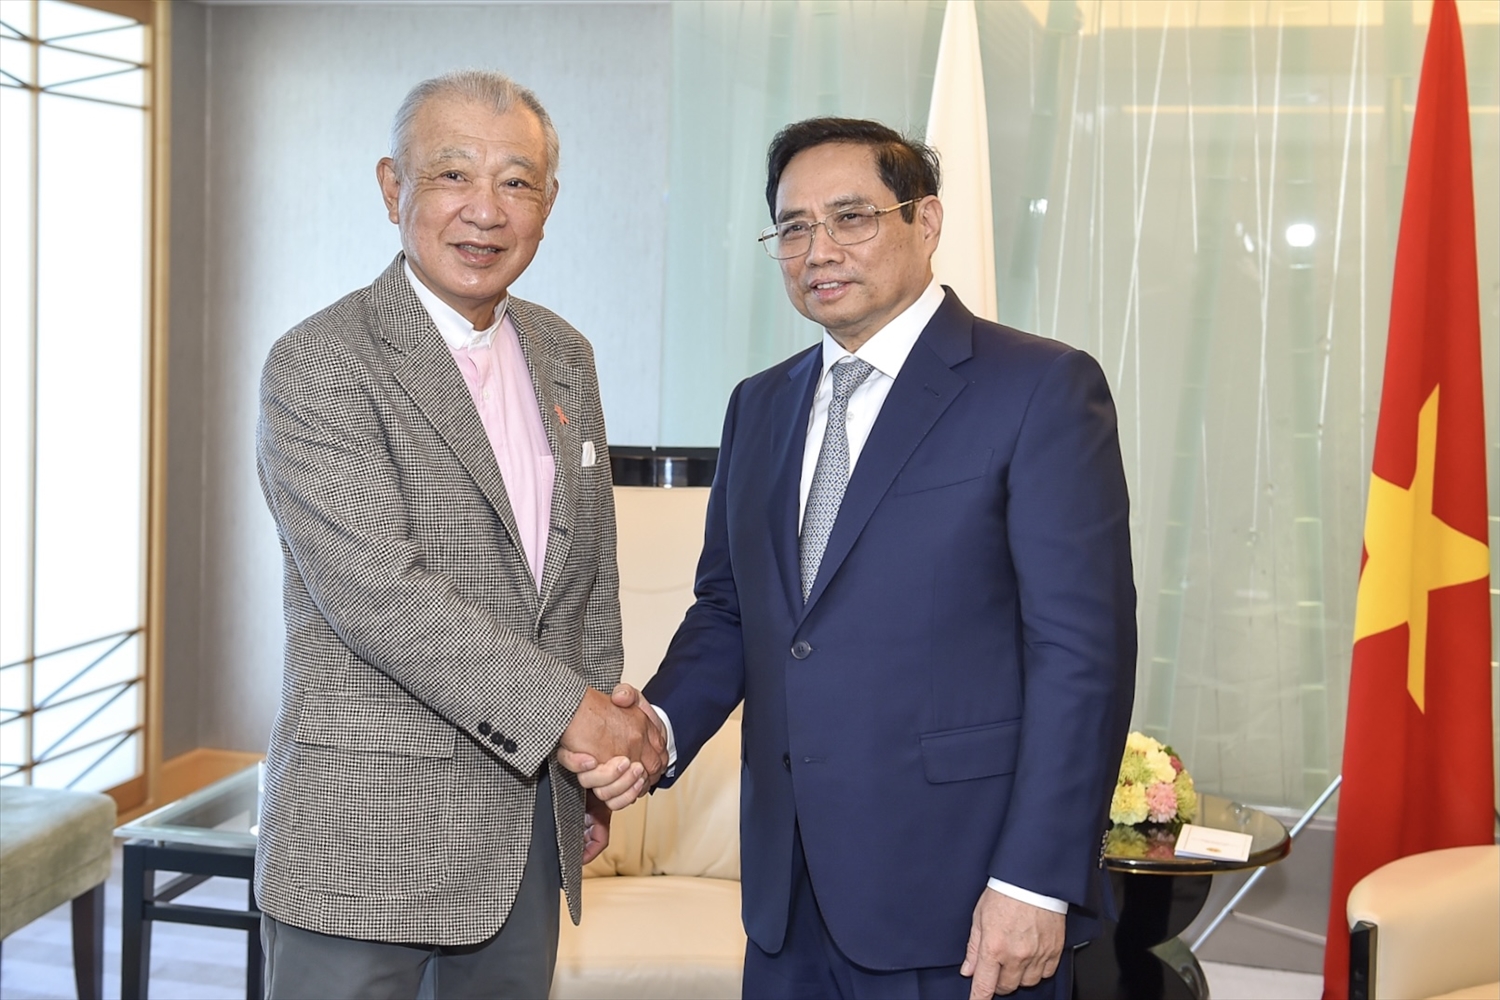 Tiếp Chủ tịch Yohei Sasakawa của Quỹ Nippon, Thủ tướng đề nghị Quỹ tiếp tục triển khai hiệu quả các hoạt động hợp tác, hỗ trợ với Việt Nam, trong đó có trợ giúp các thương binh, người khuyết tật, nạn nhân chiến tranh, hợp tác phát triển nguồn nhân lực… Ảnh: VGP/Nhật Bắc